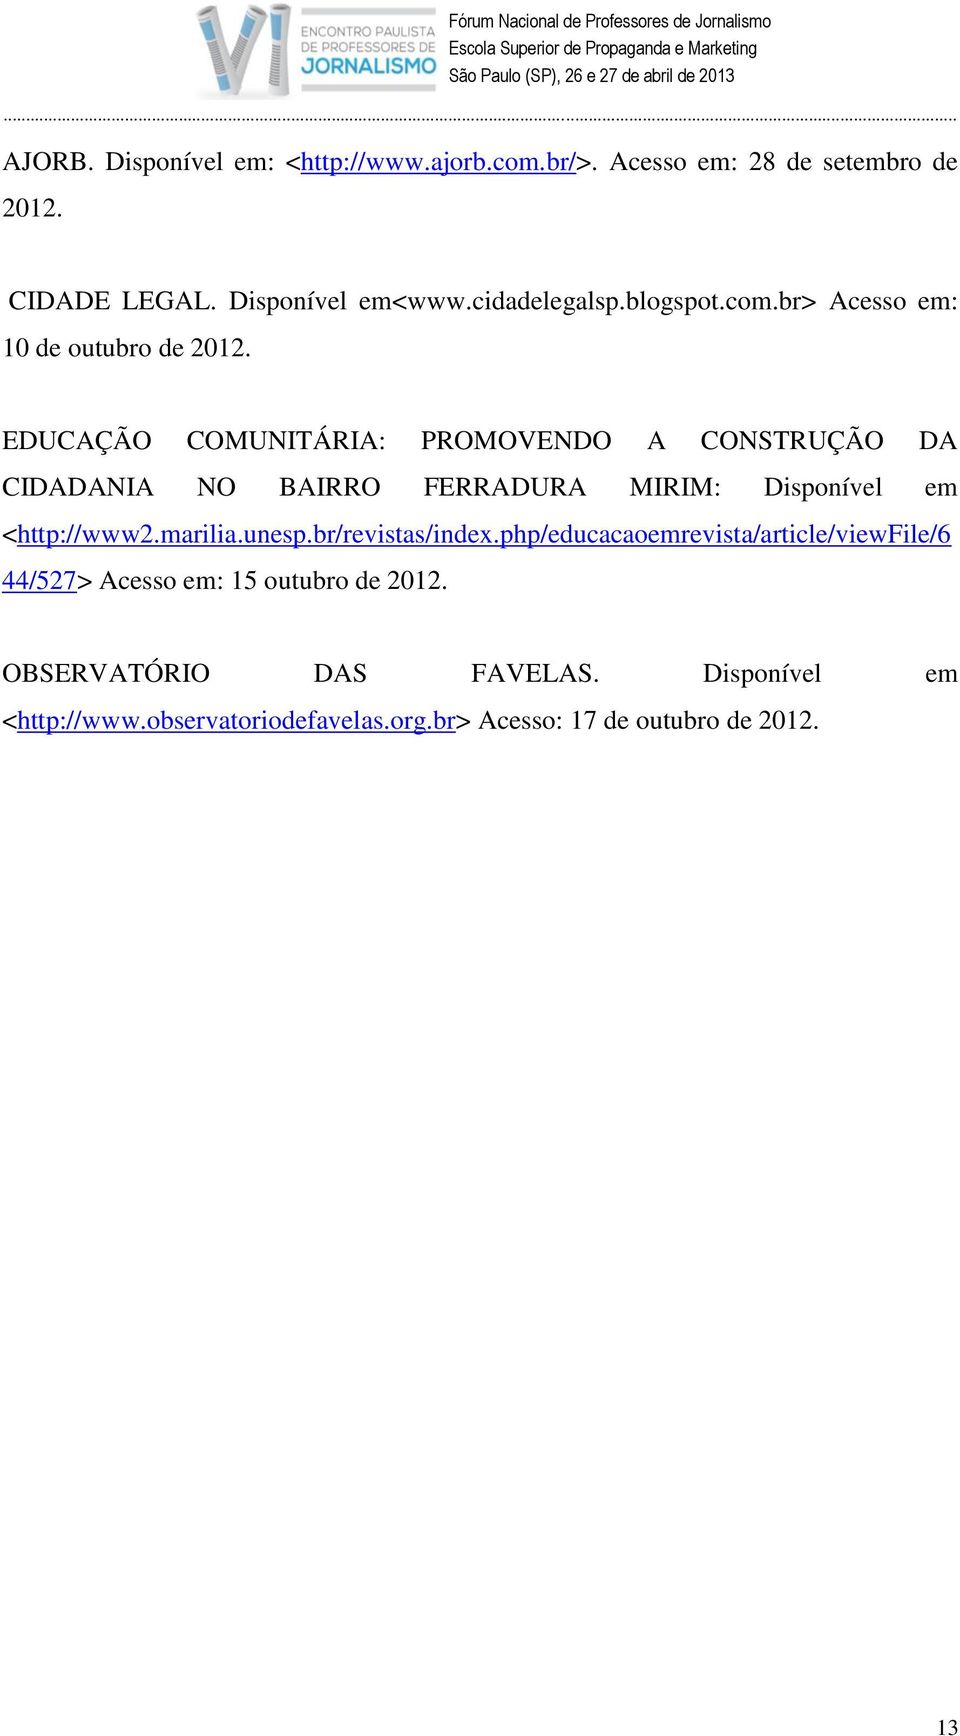 EDUCAÇÃO COMUNITÁRIA: PROMOVENDO A CONSTRUÇÃO DA CIDADANIA NO BAIRRO FERRADURA MIRIM: Disponível em <http://www2.marilia.unesp.